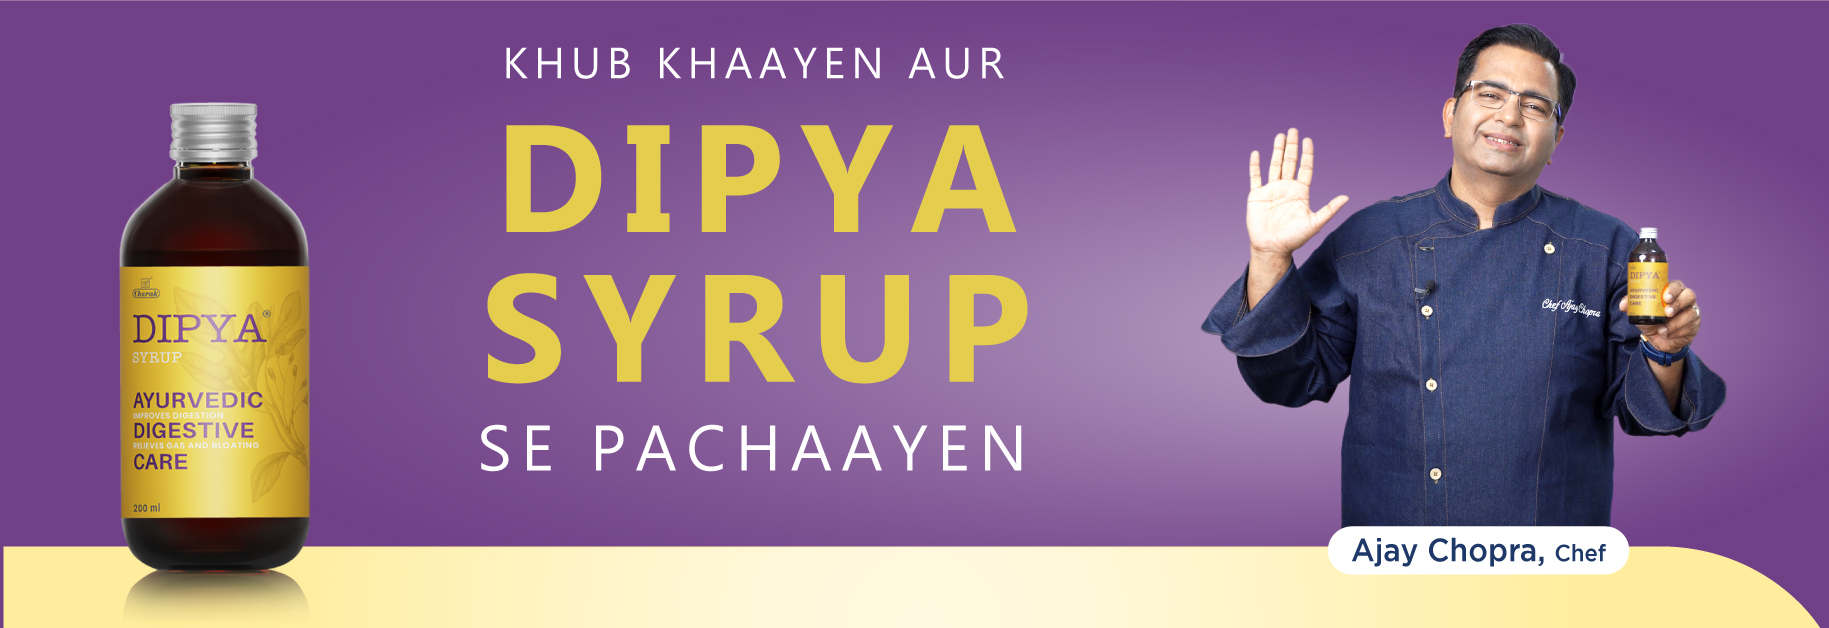 Dipya Syrup